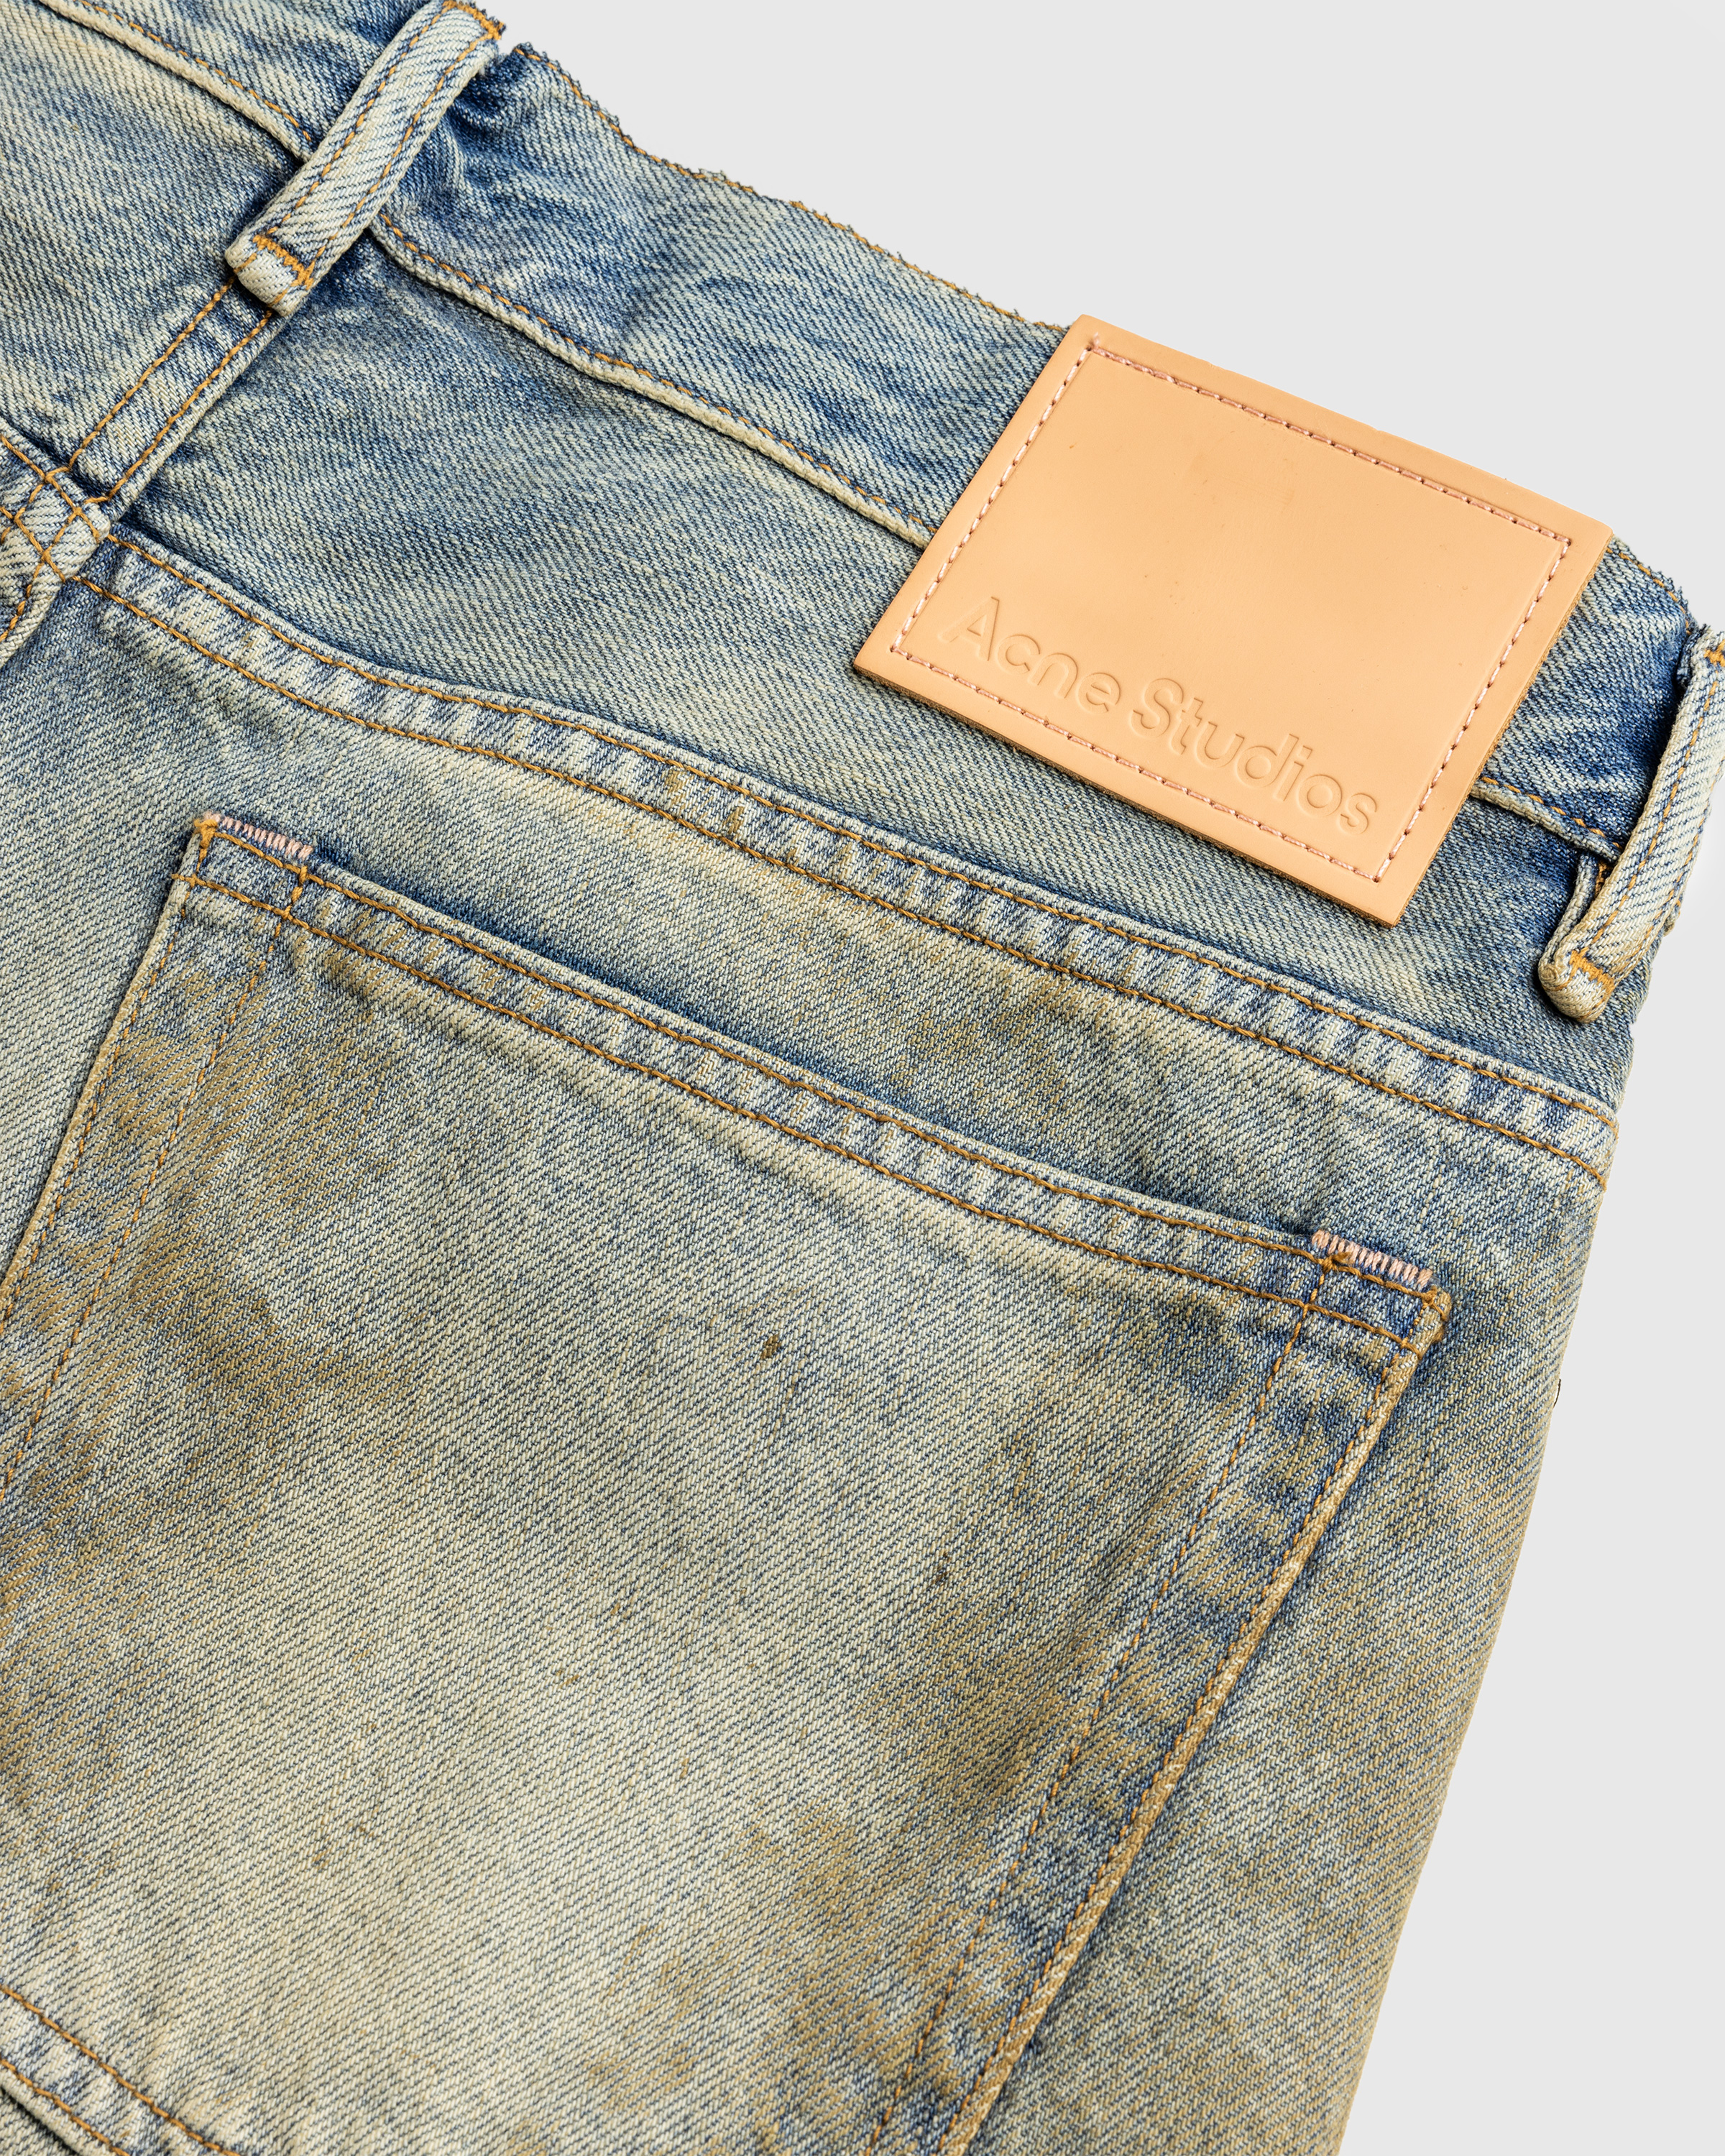 Acne Studios – Loose Fit Jeans 2021M Mid Blue - Denim - Blue - Image 6